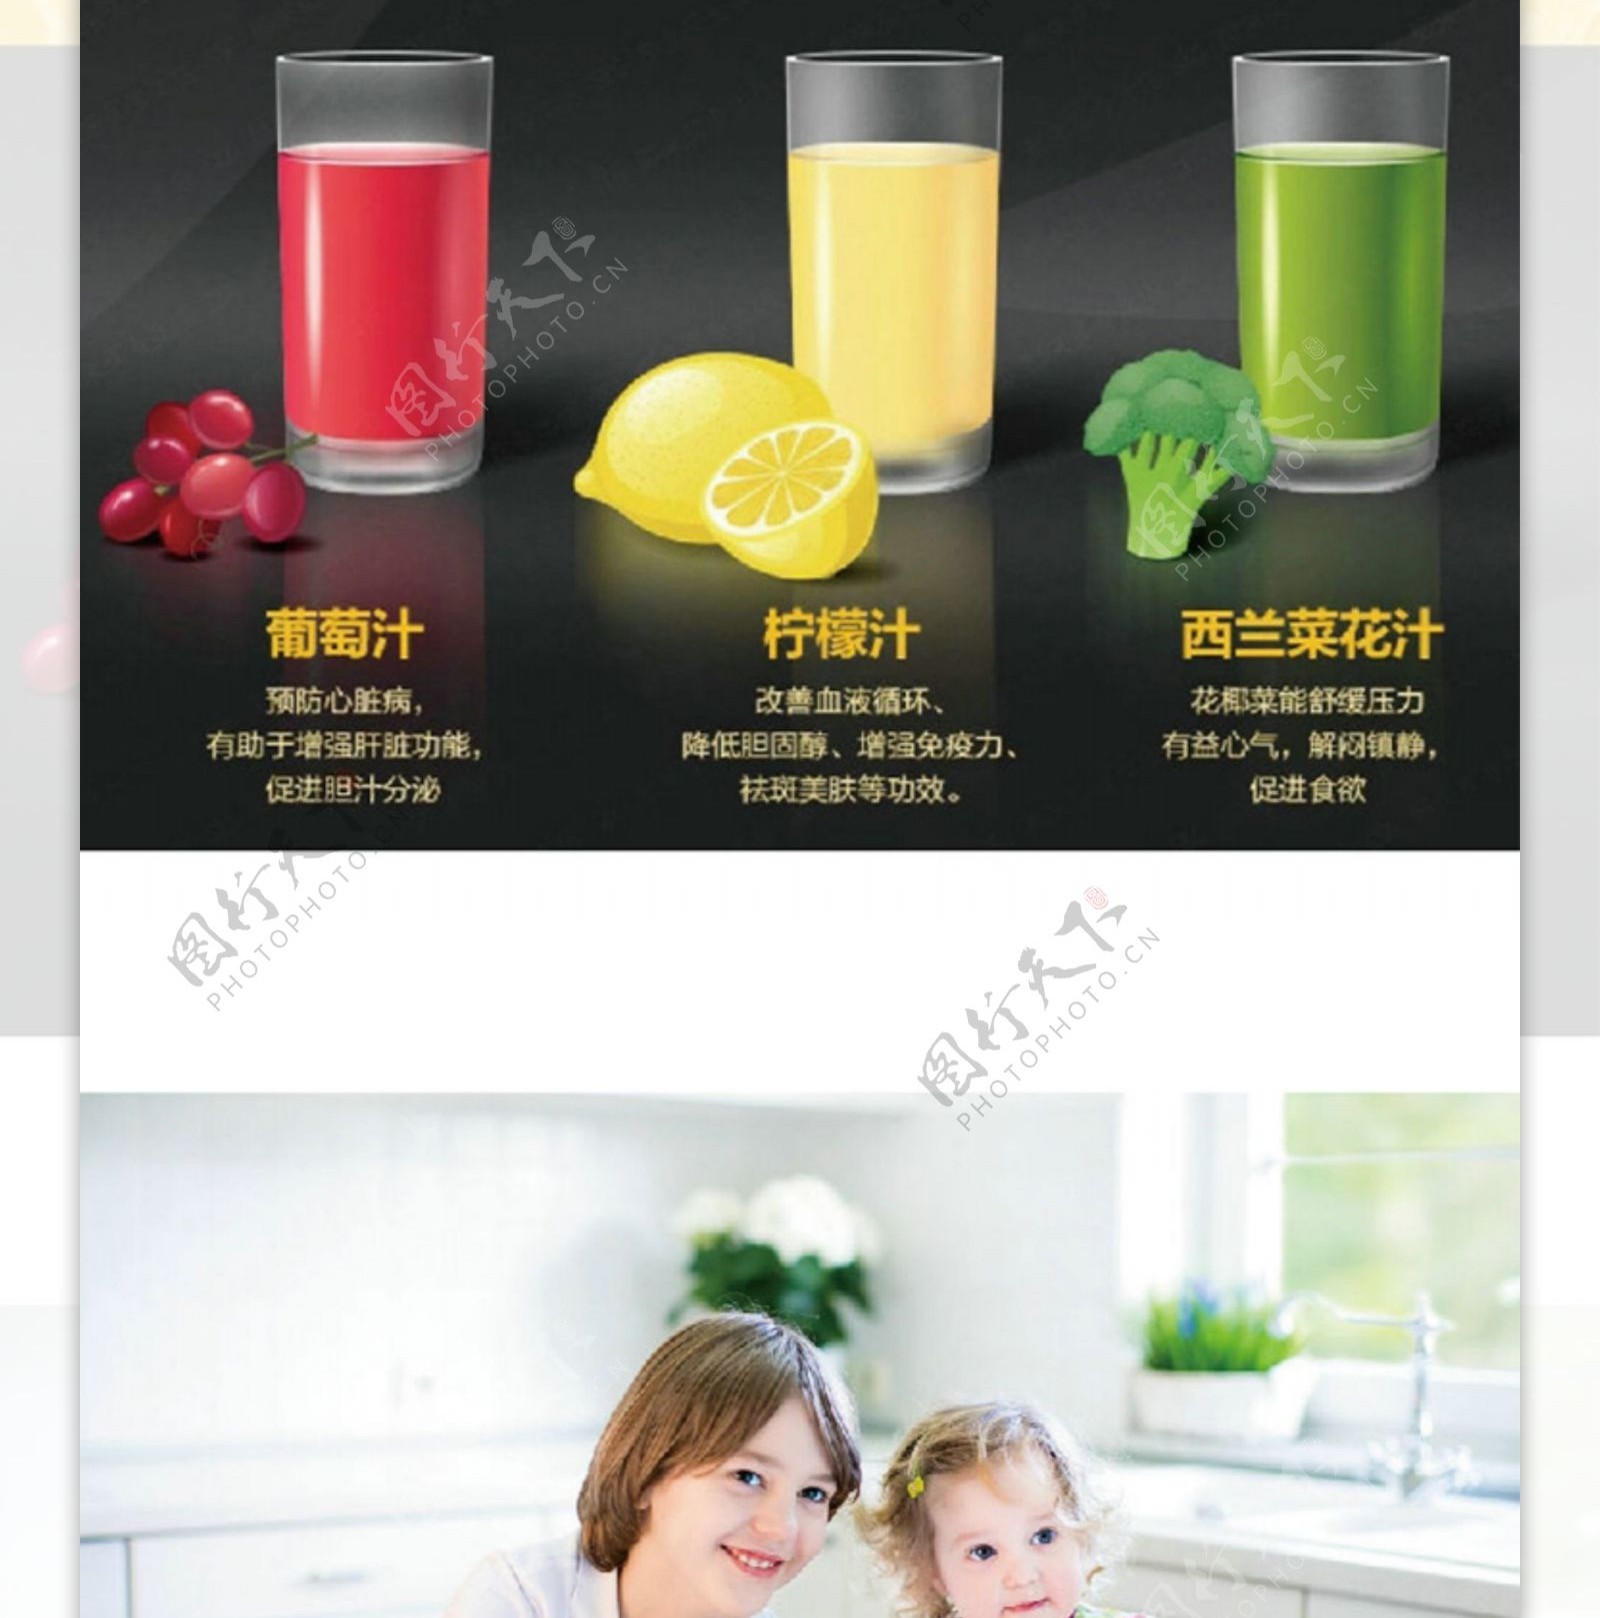 榨汁机原汁机微信公众平台广告宣传图案例